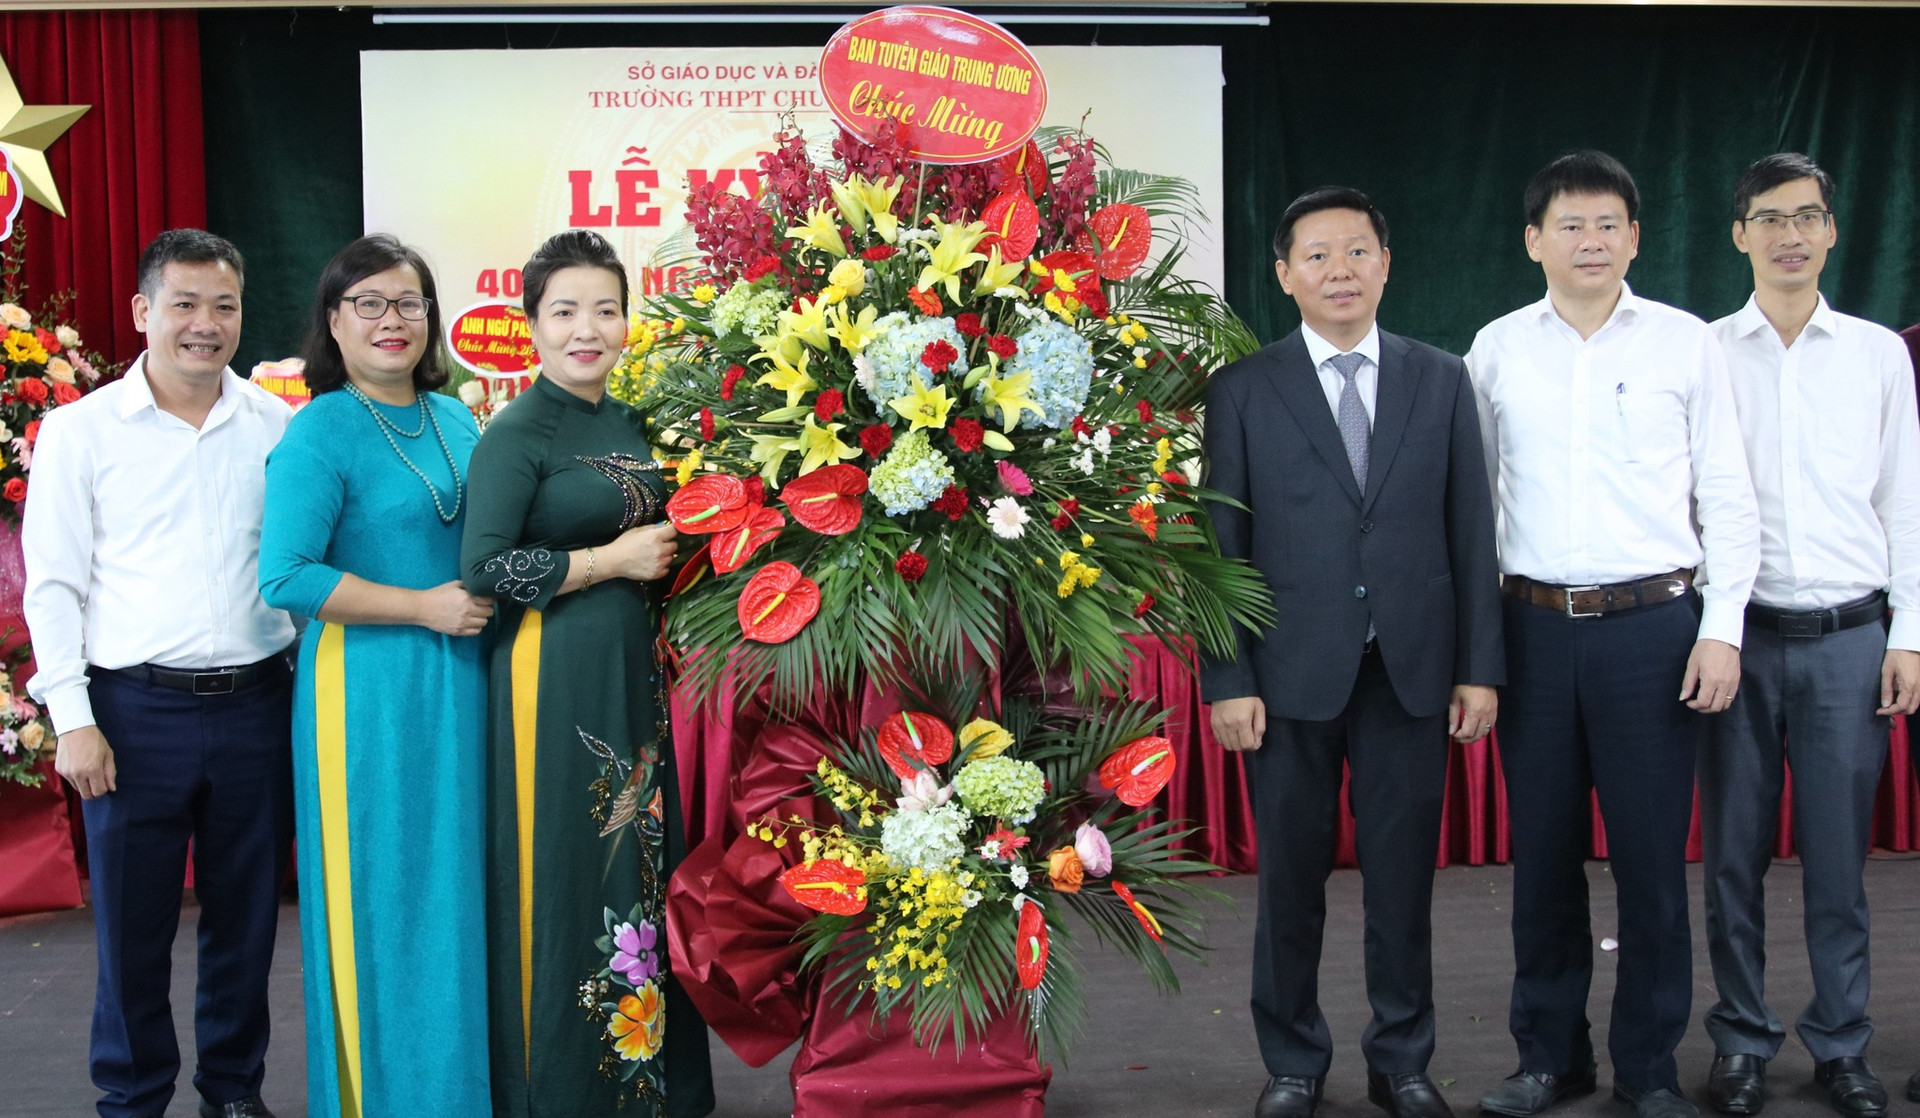 Trao học bổng Nguyễn Thái Bình tại ngôi trường có 200 học sinh giỏi quốc gia - ảnh 1